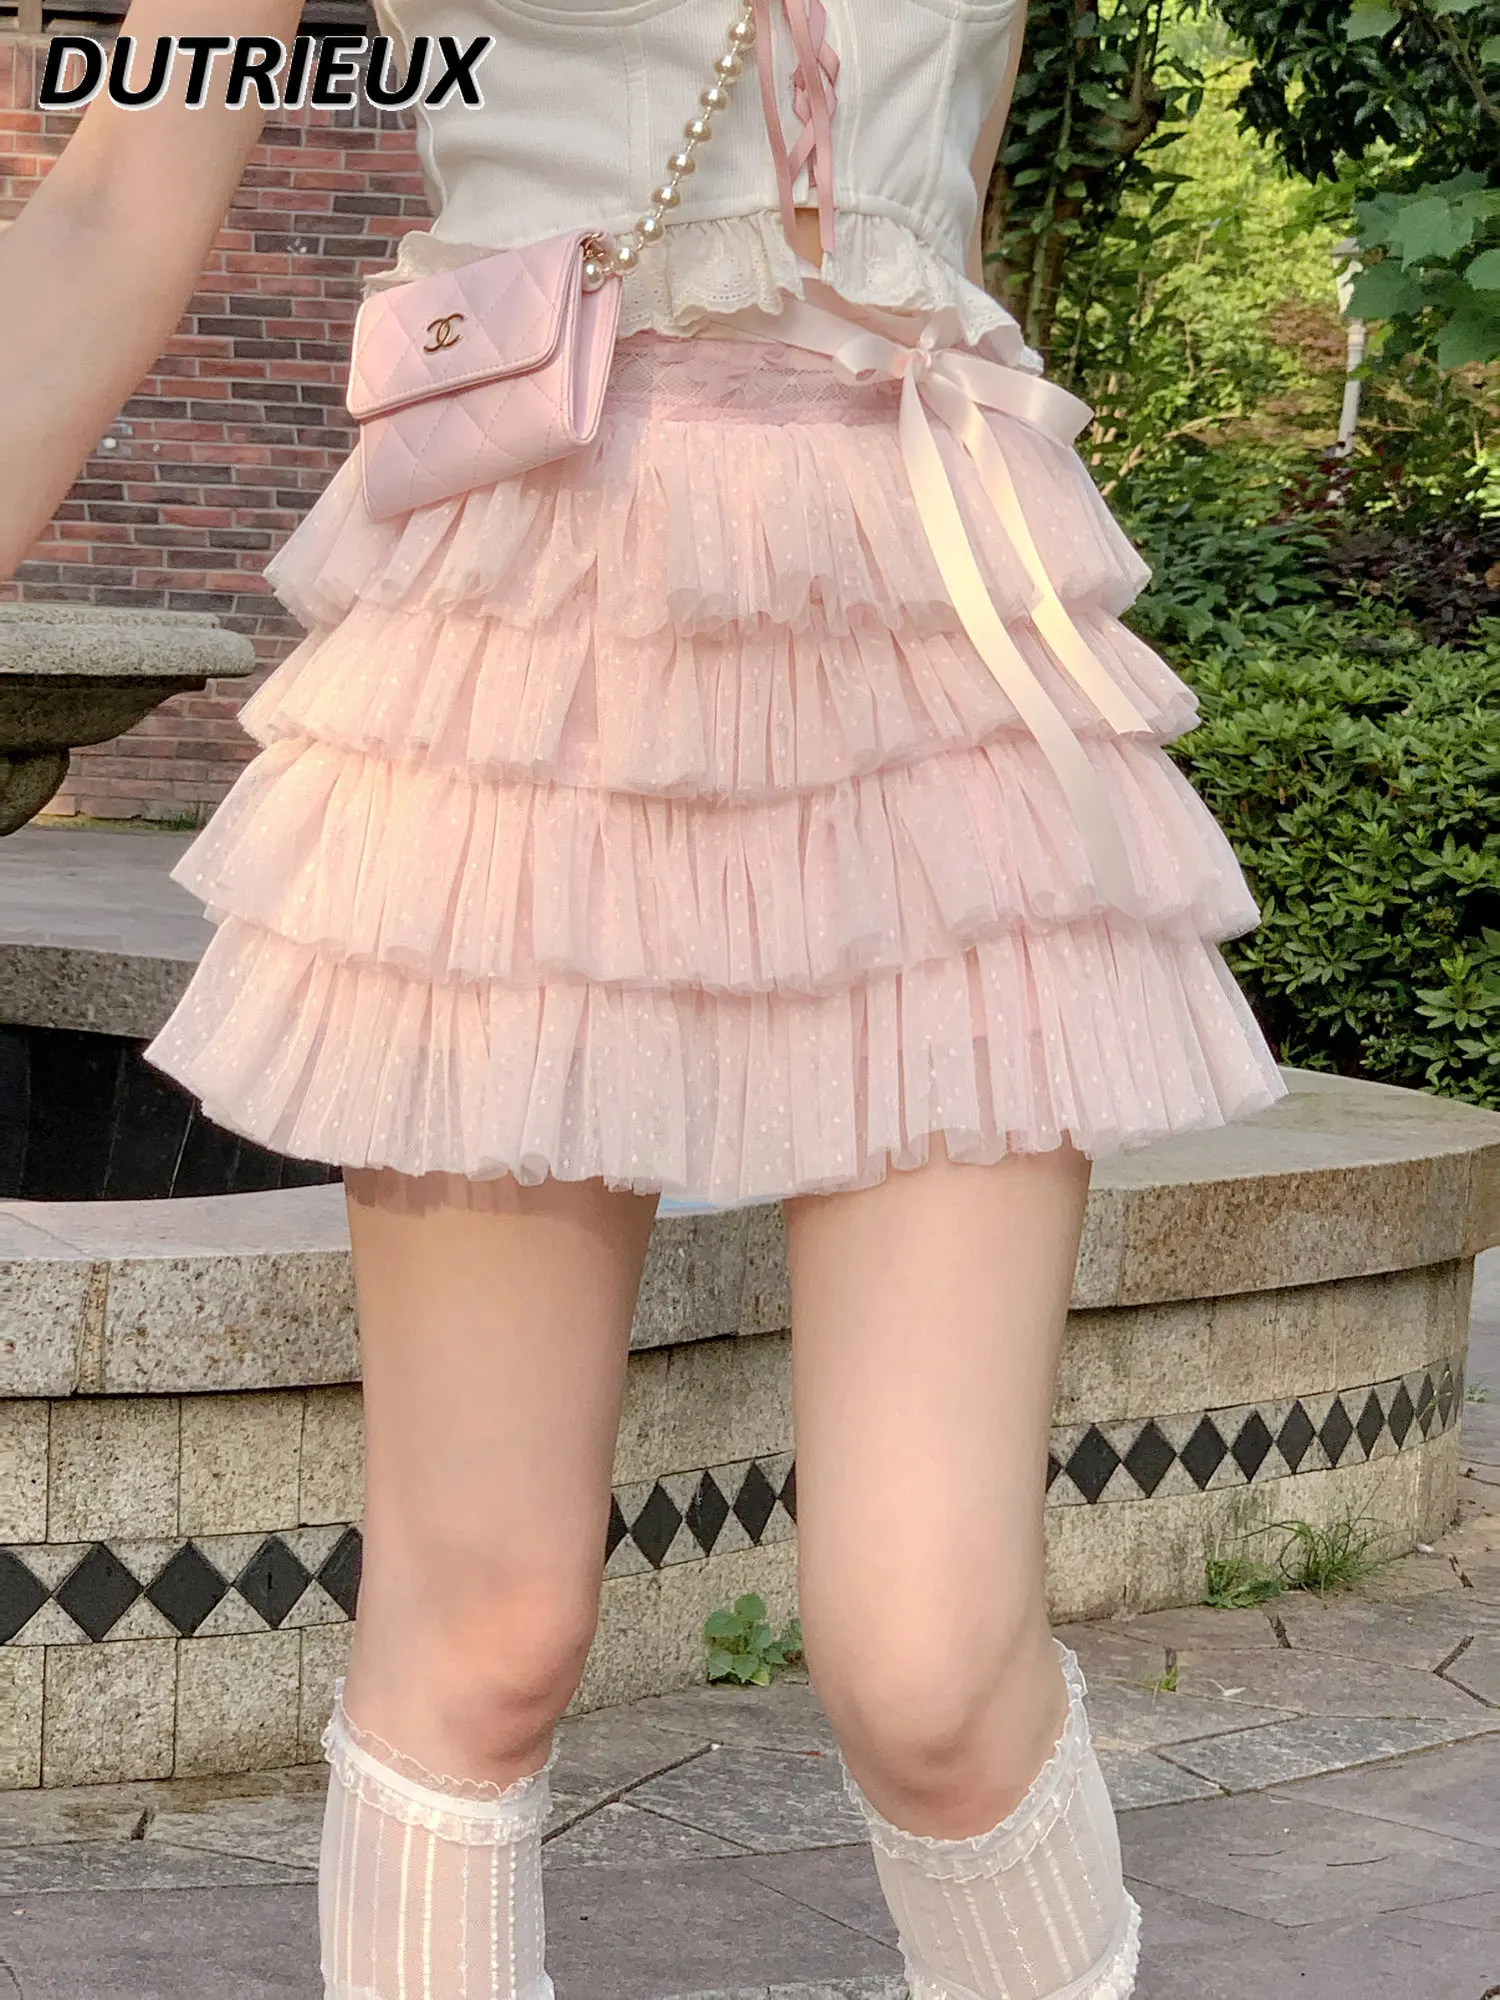 

Sweet Cute Lolita Style Mini Skirt for Girl Mesh Polka Dot Bow High Waist Skirt Lace-up Pettiskirt Summer Women's Mini Skirt